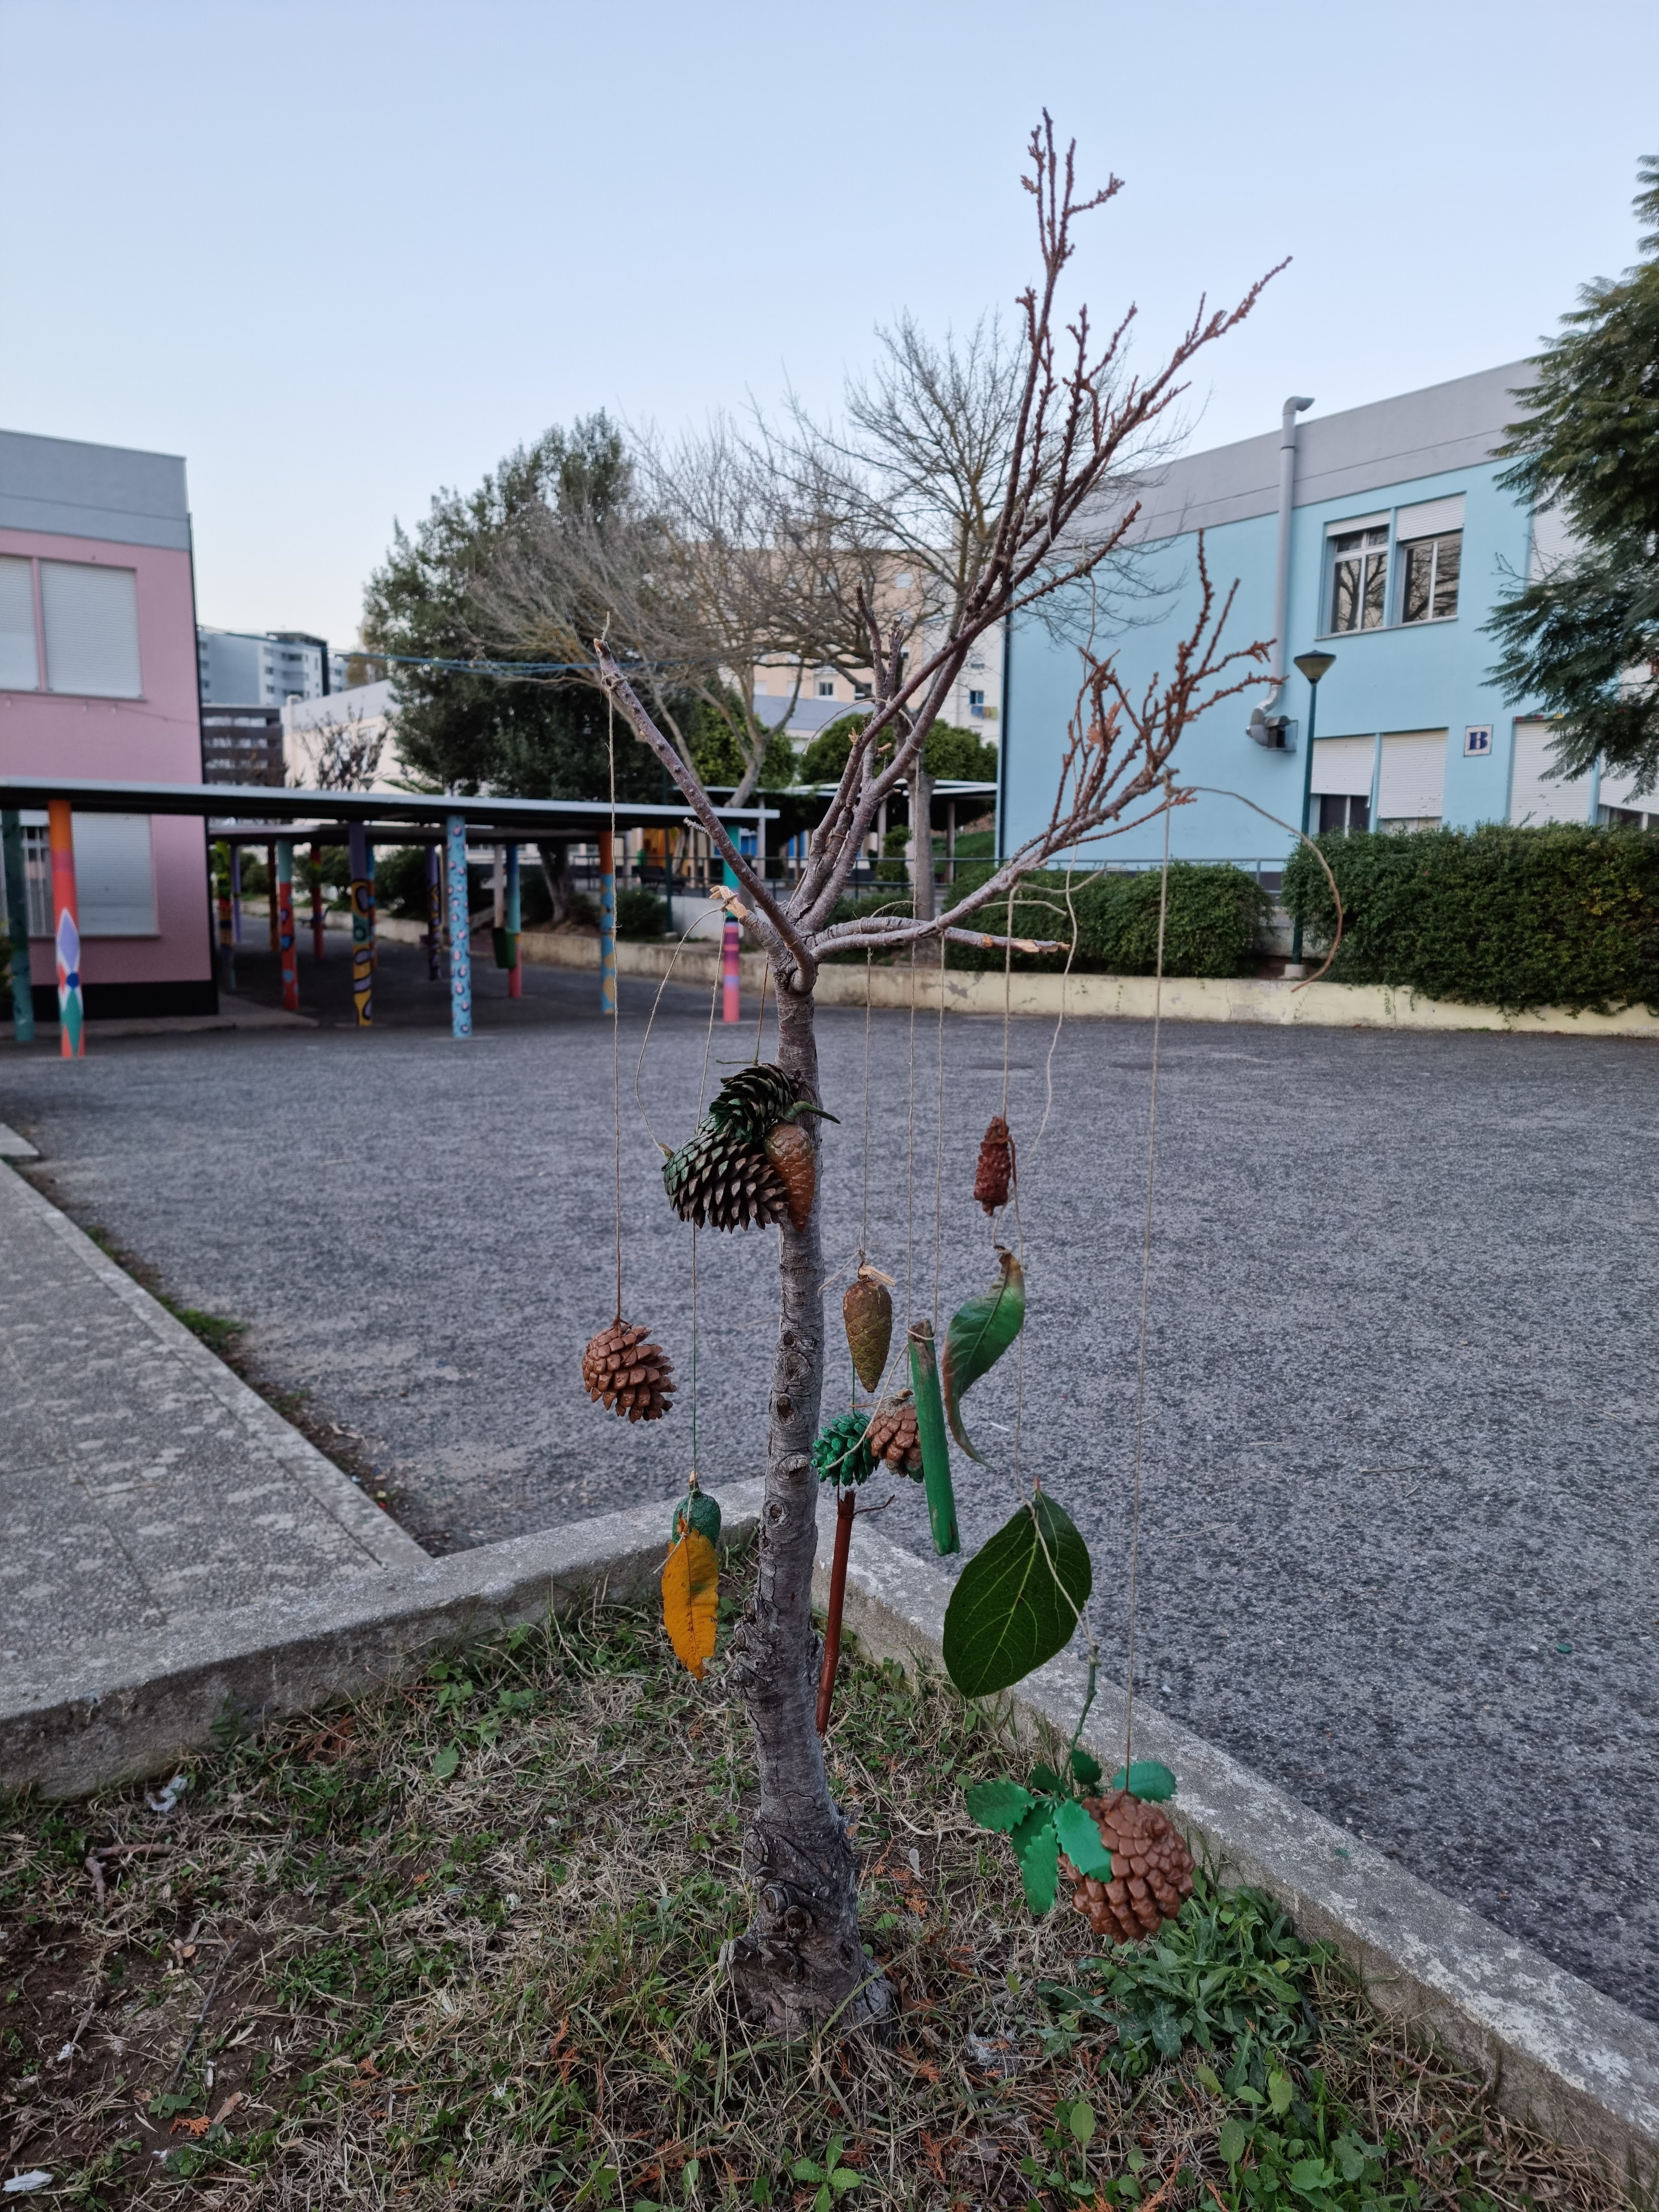 ENFEITES DE NATAL LAND ART - Reutilização de materiais naturais encontrados nos espaços verdes da escola para criação artística de enfeites de natal